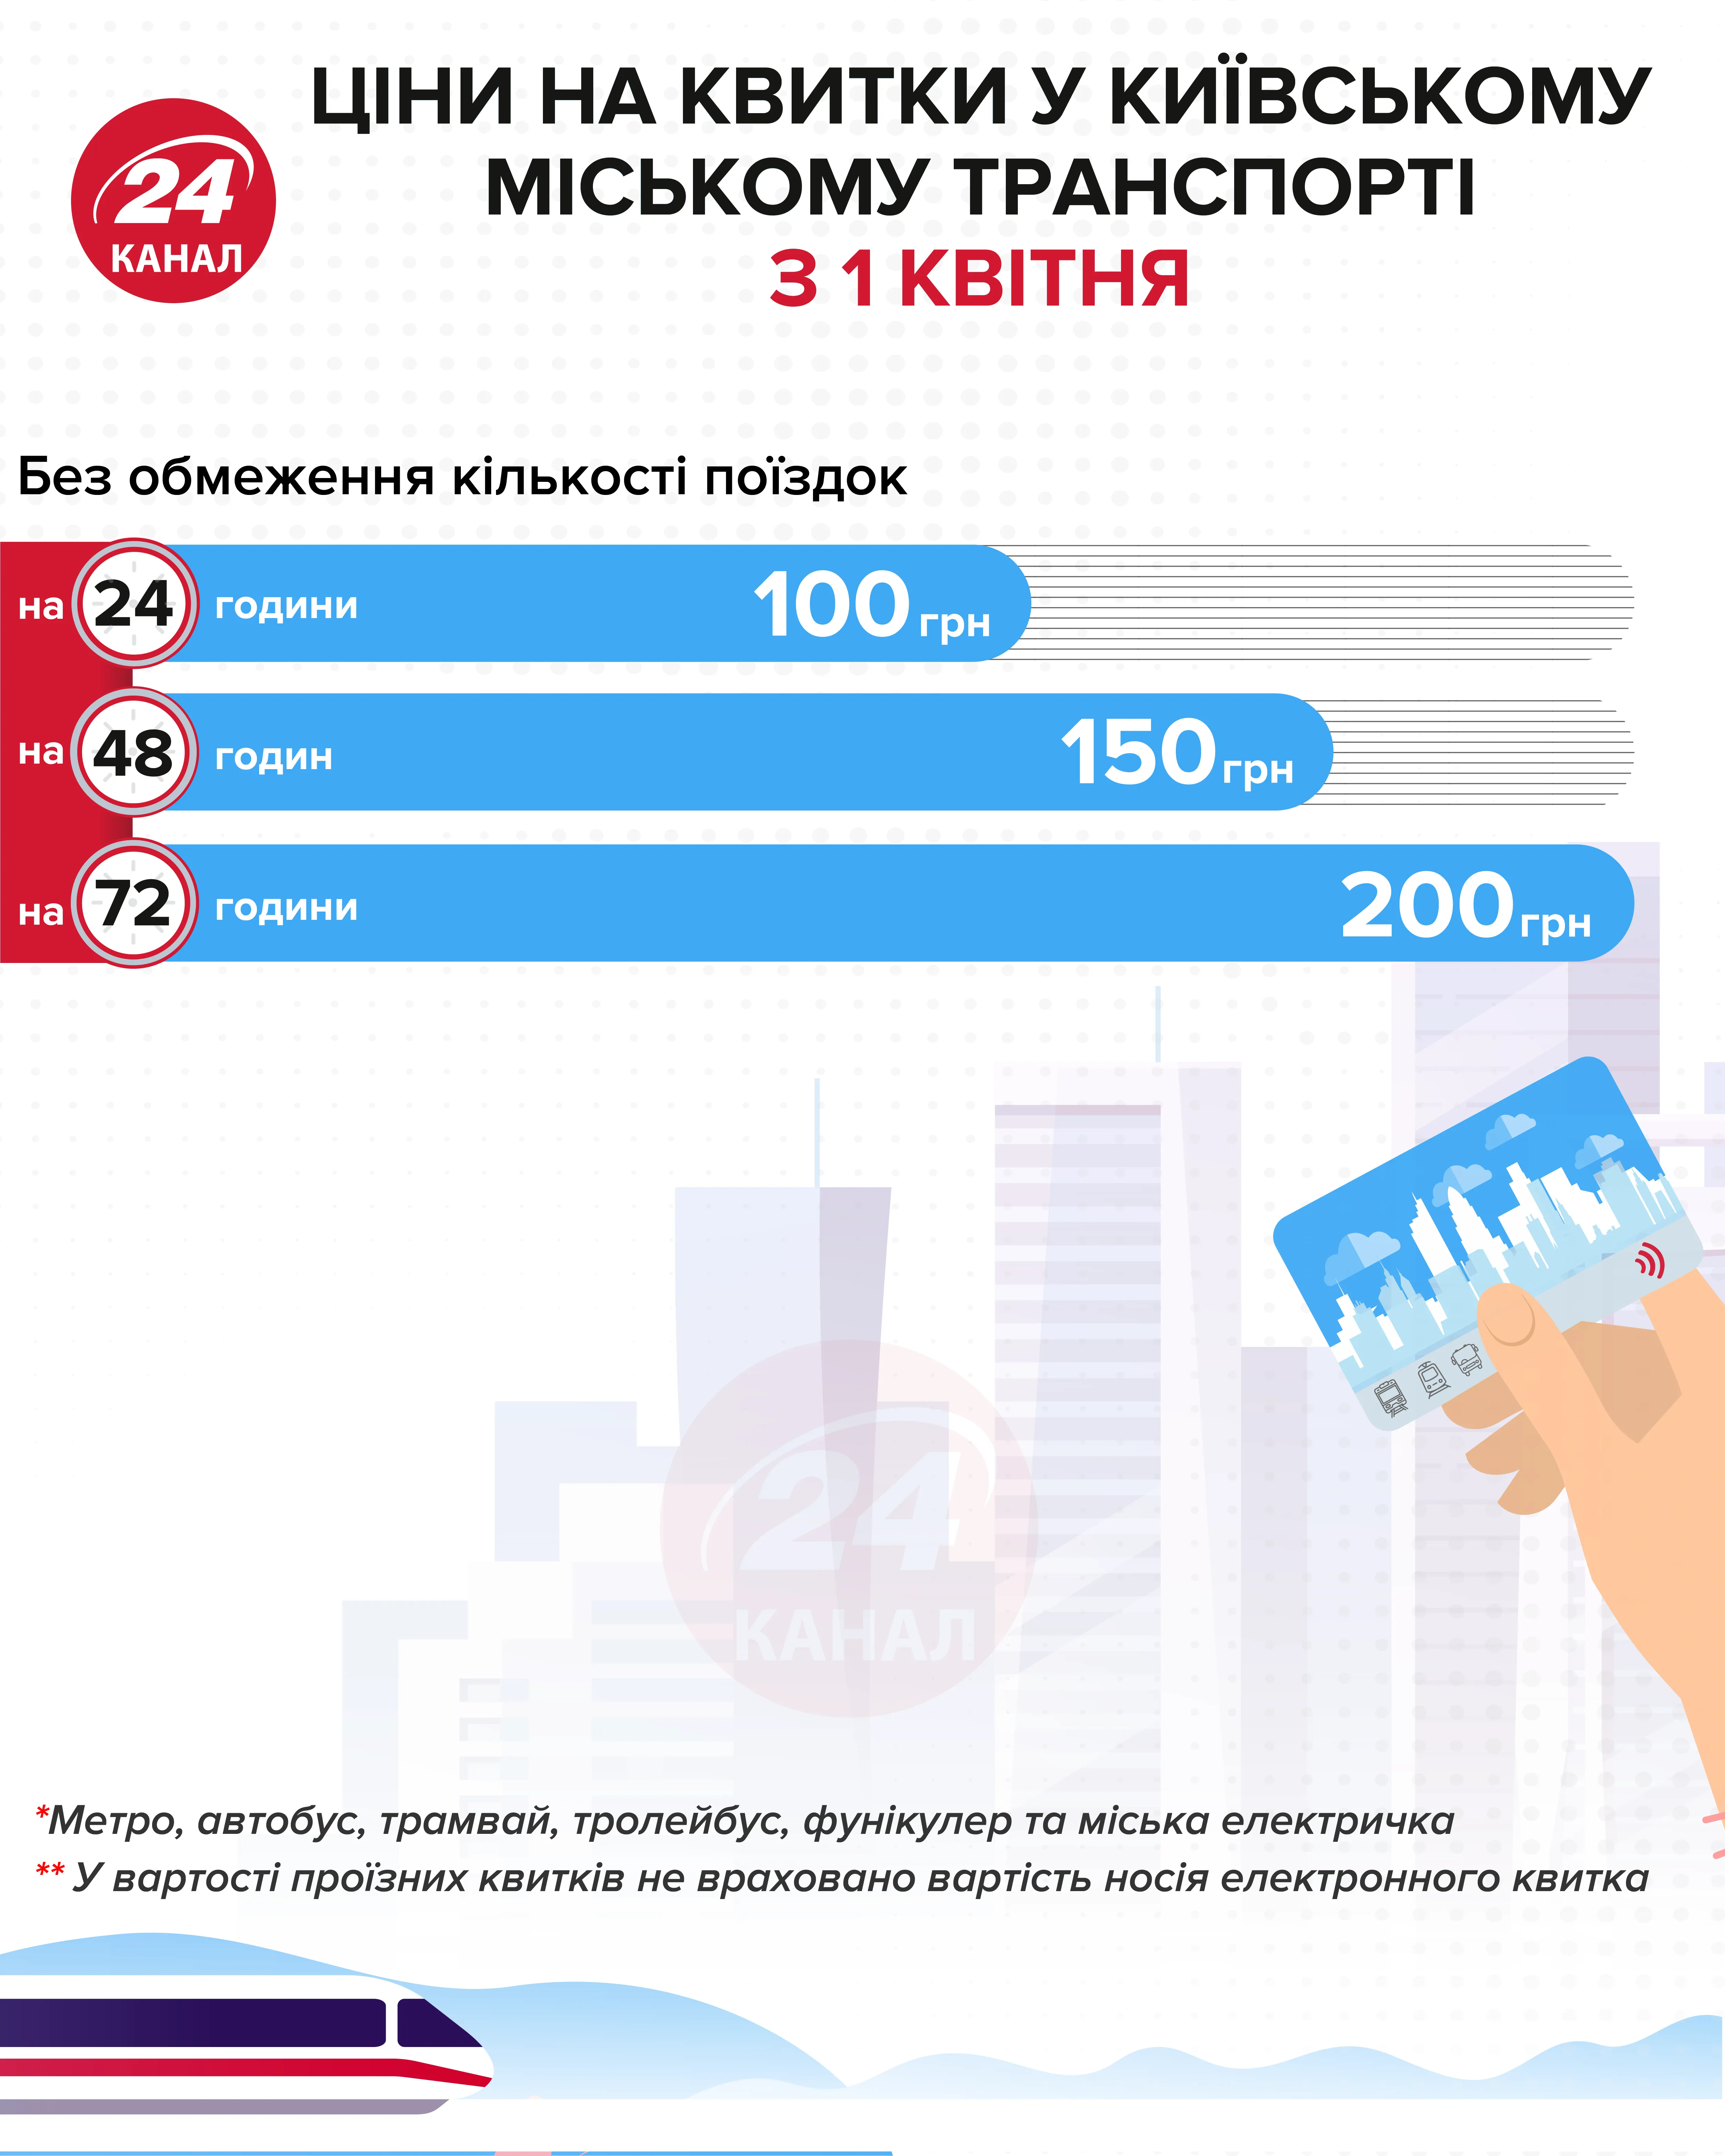 ціни на квитки в Києві інфографіка 24 канал